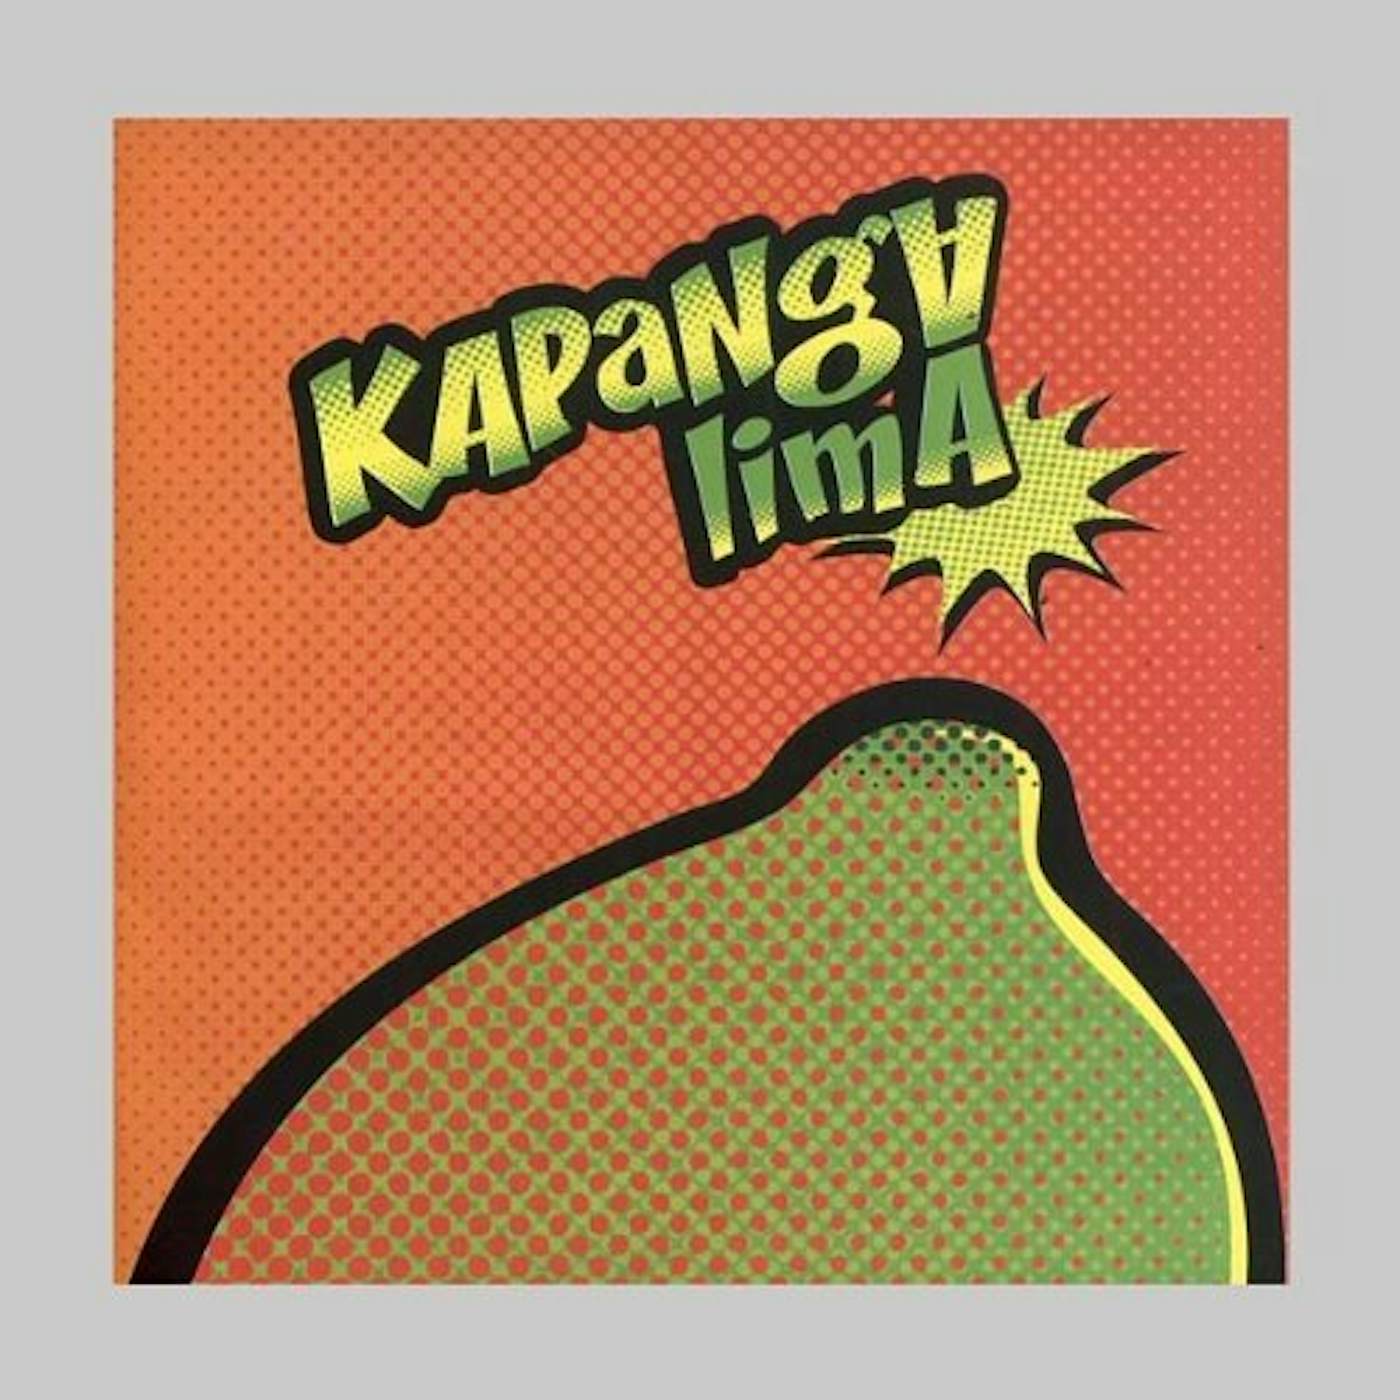 Kapanga LIMA CD